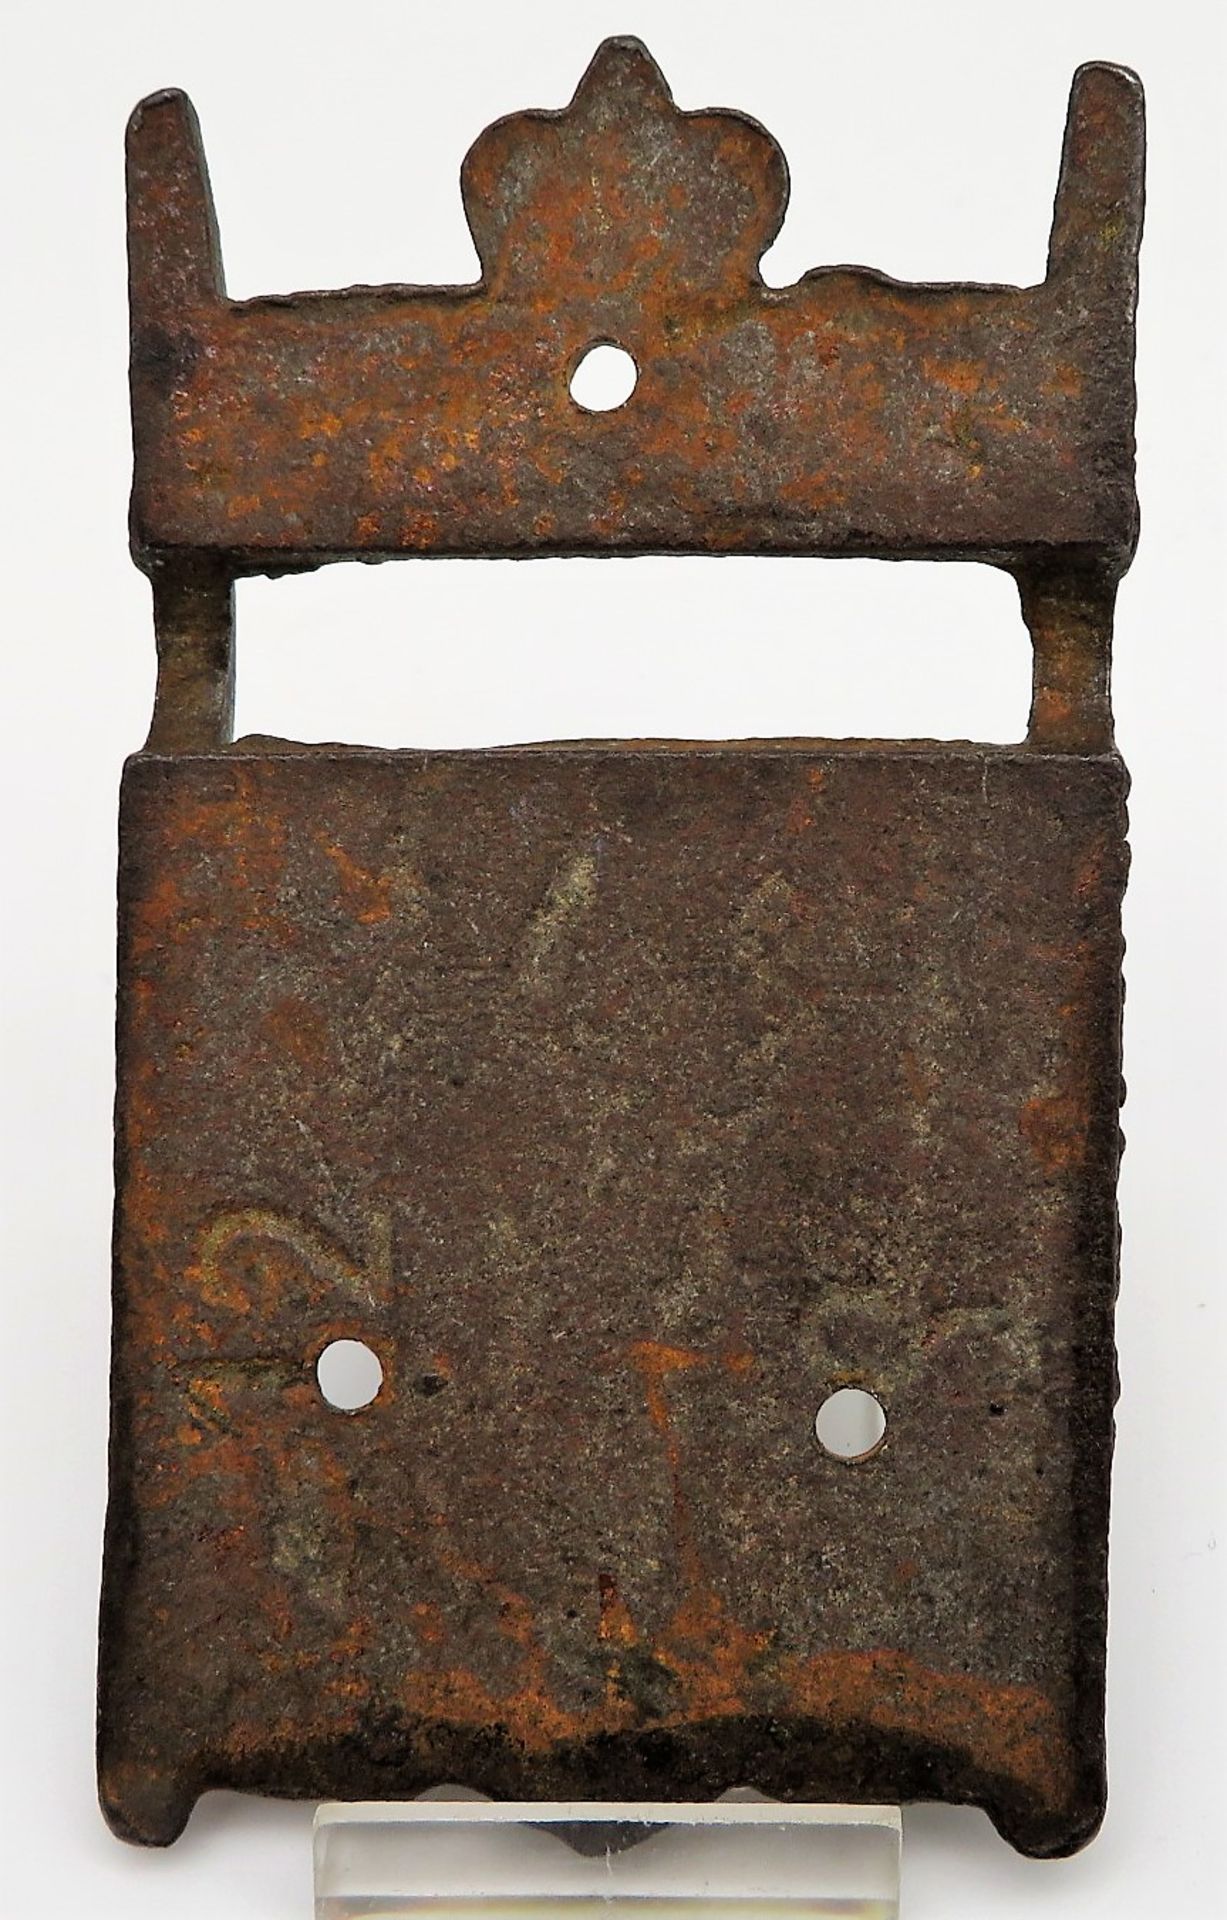 Antiker Truhenbeschlag, Eisenguss, 13 x 7,5 x 1 cm. - Bild 2 aus 2